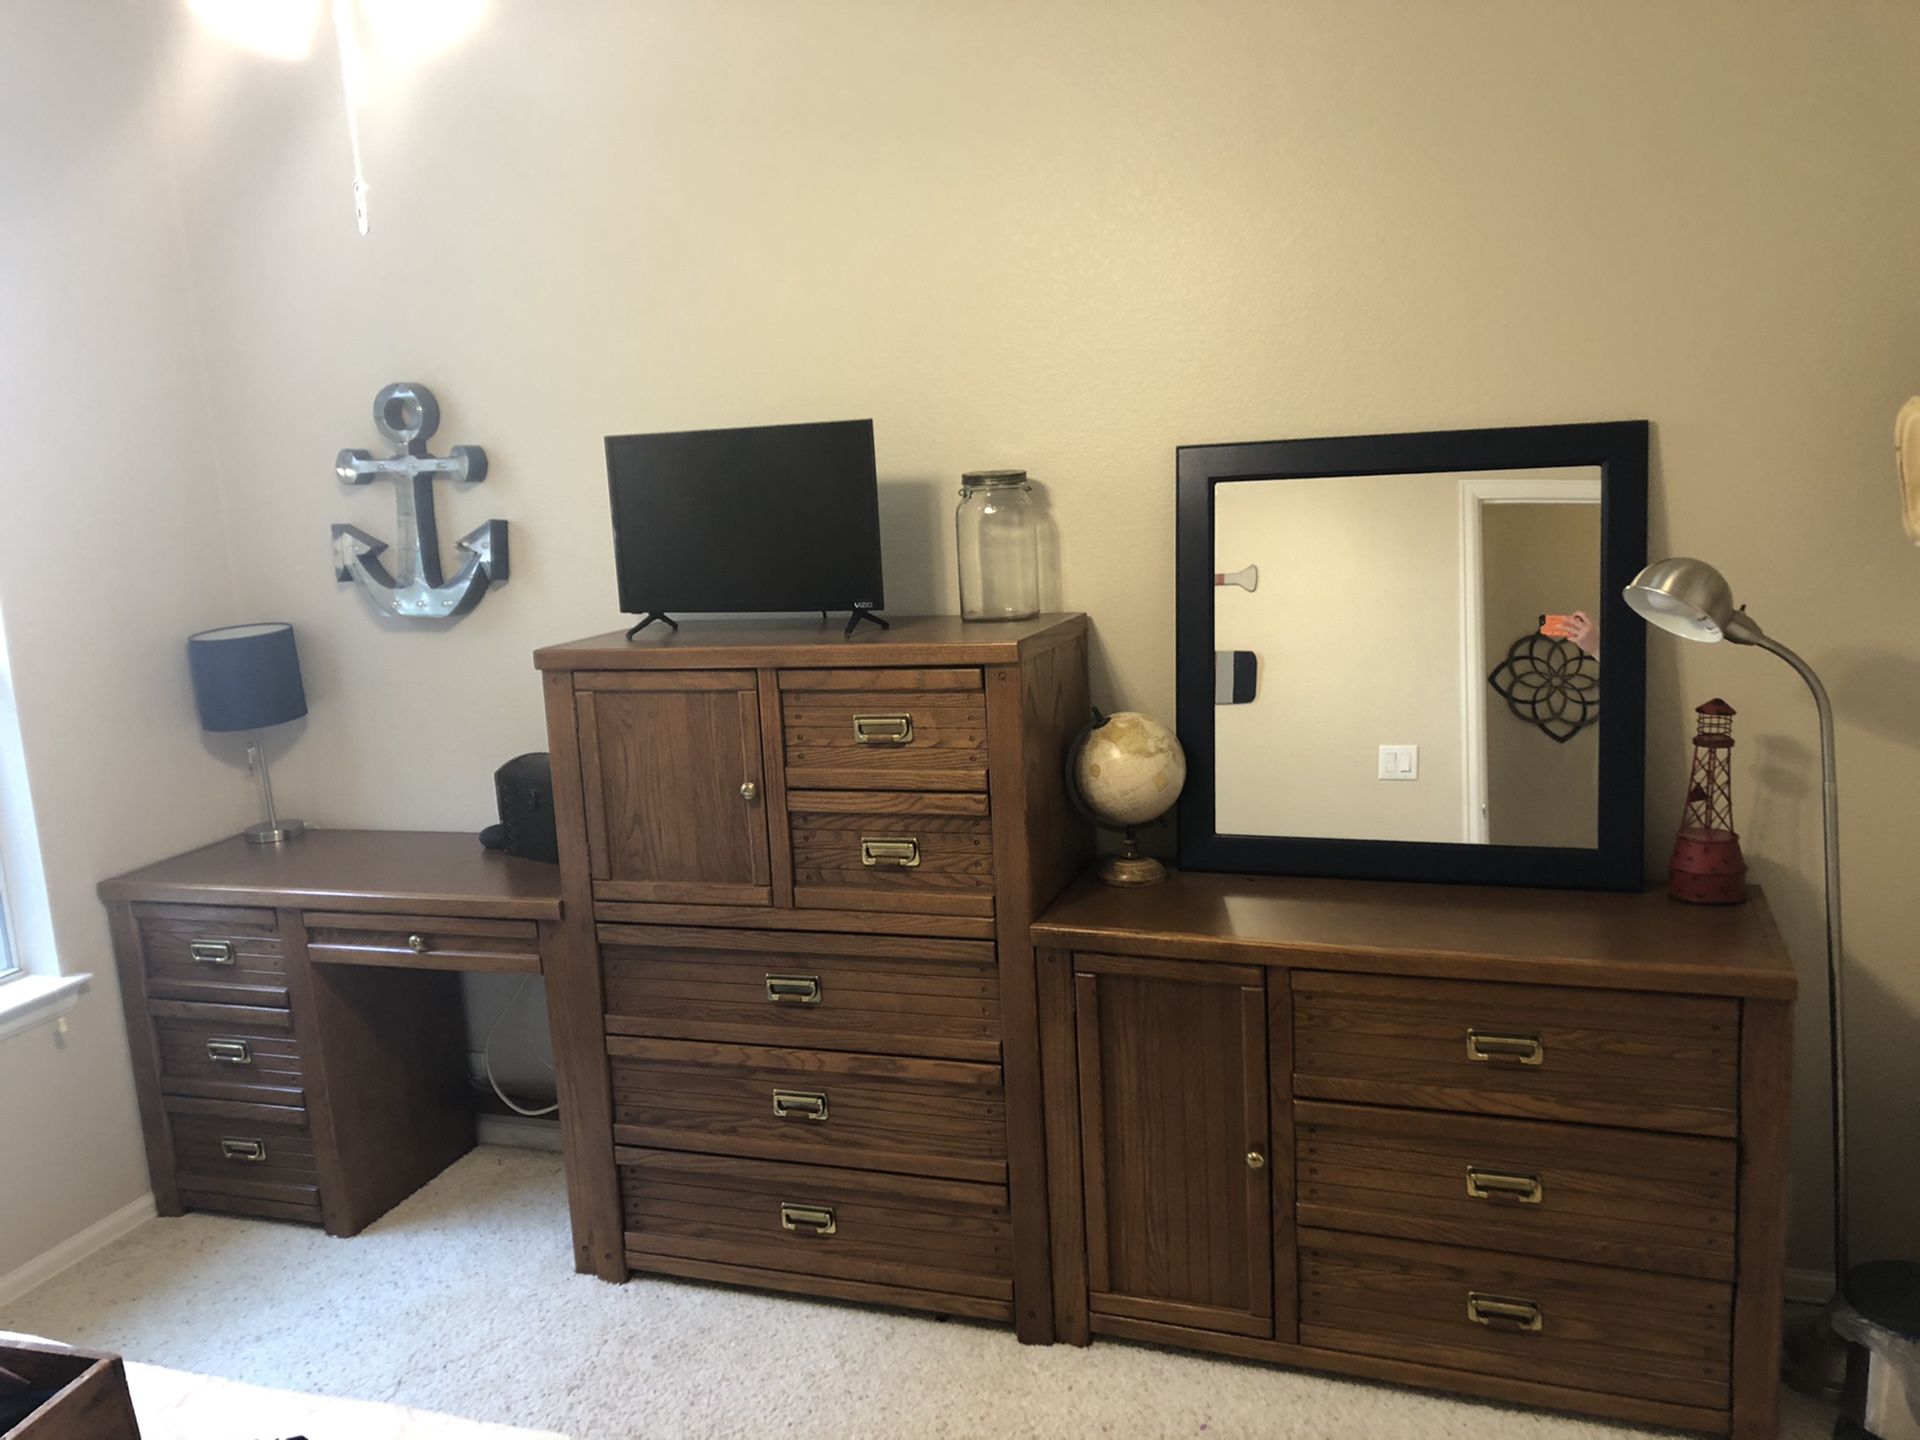 Bedroom furniture: desk, tall dresser, dresser.